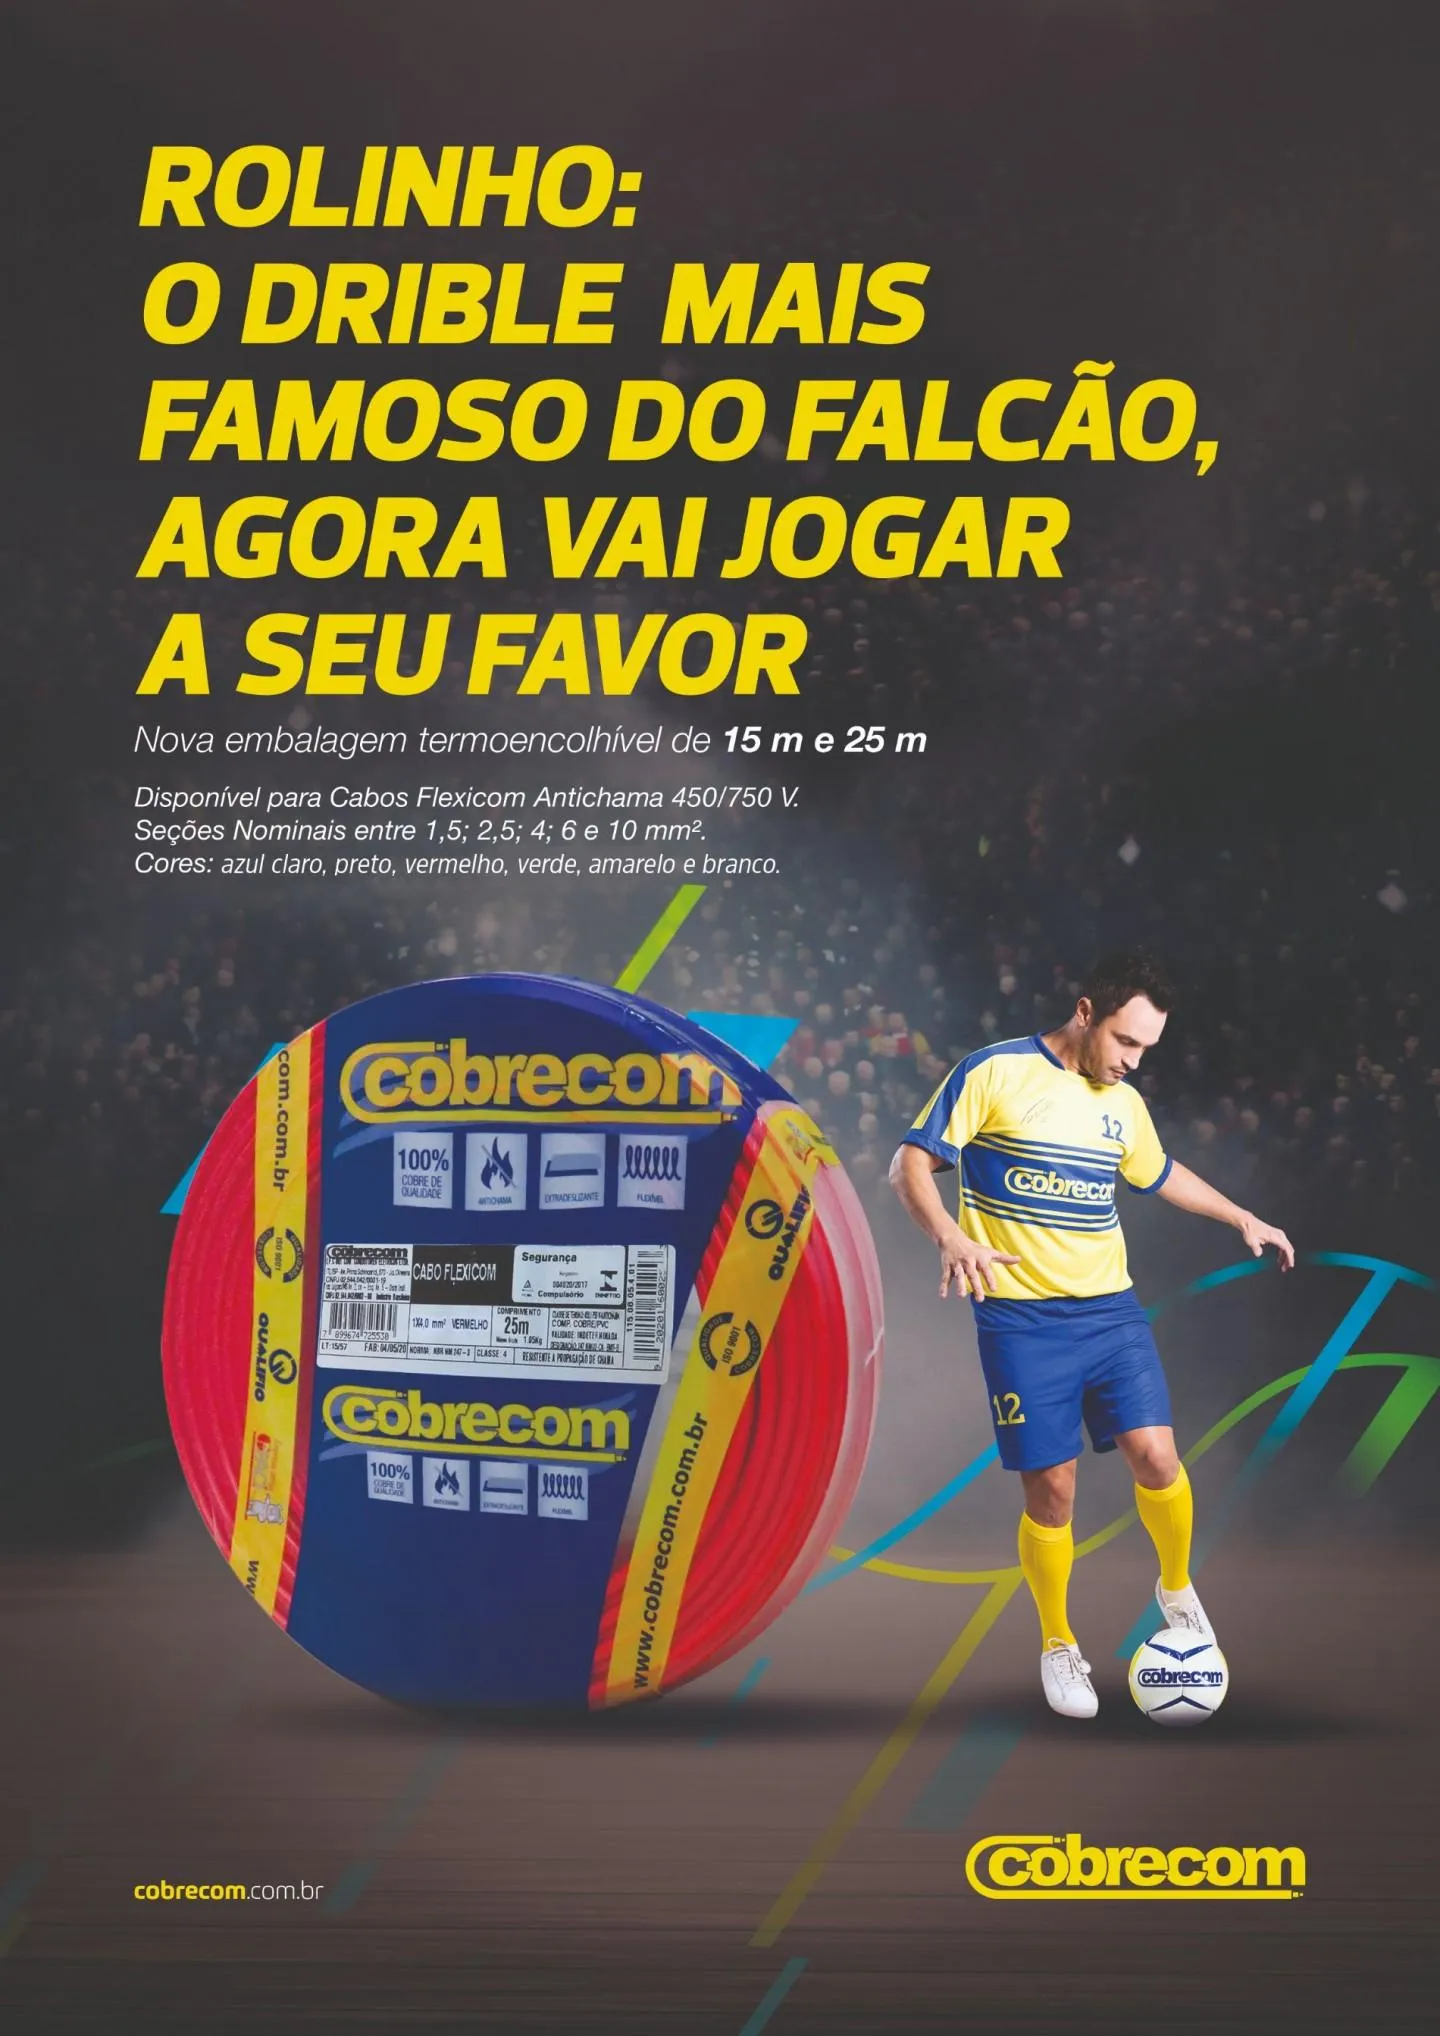 IFC/COBRECOM lança Rolinho com Cabo Flexicom Antichama 450/750 V | Cobrecom